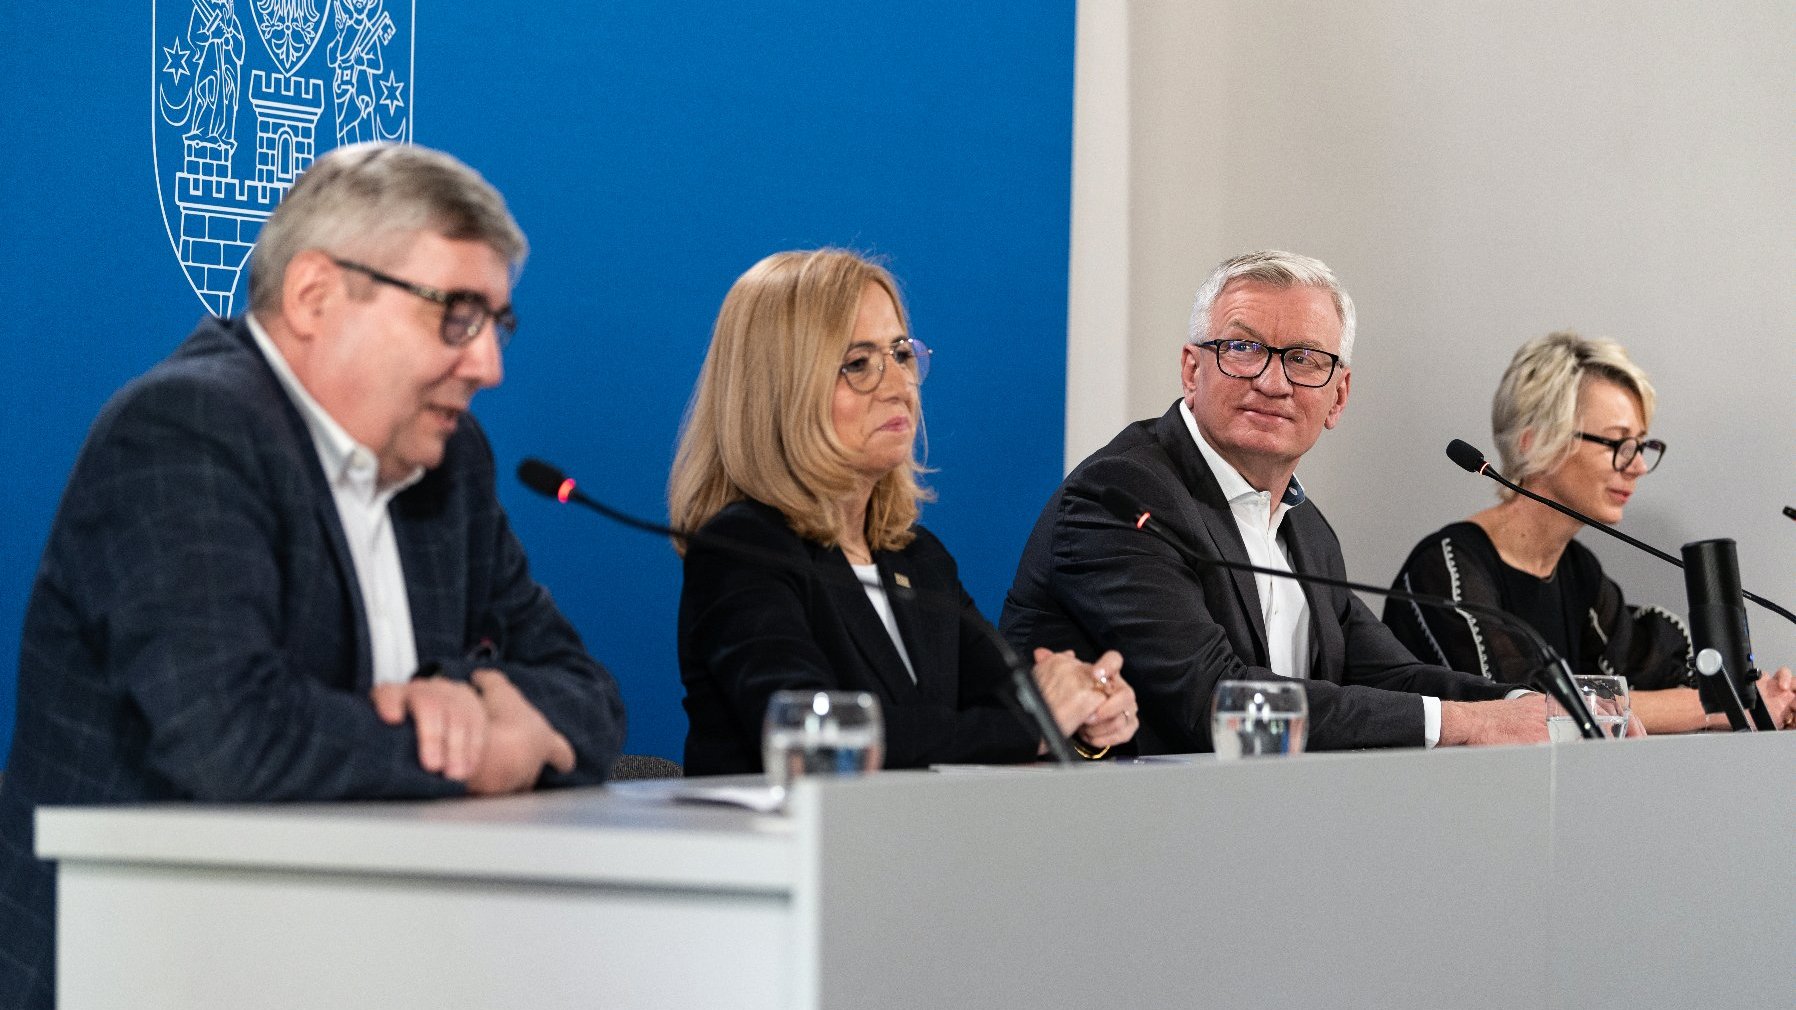 Na zdjęciu cztery osoby za stołem konferencyjnym, w środku prezydent Poznania, w tle granatowa ścianka - grafika artykułu